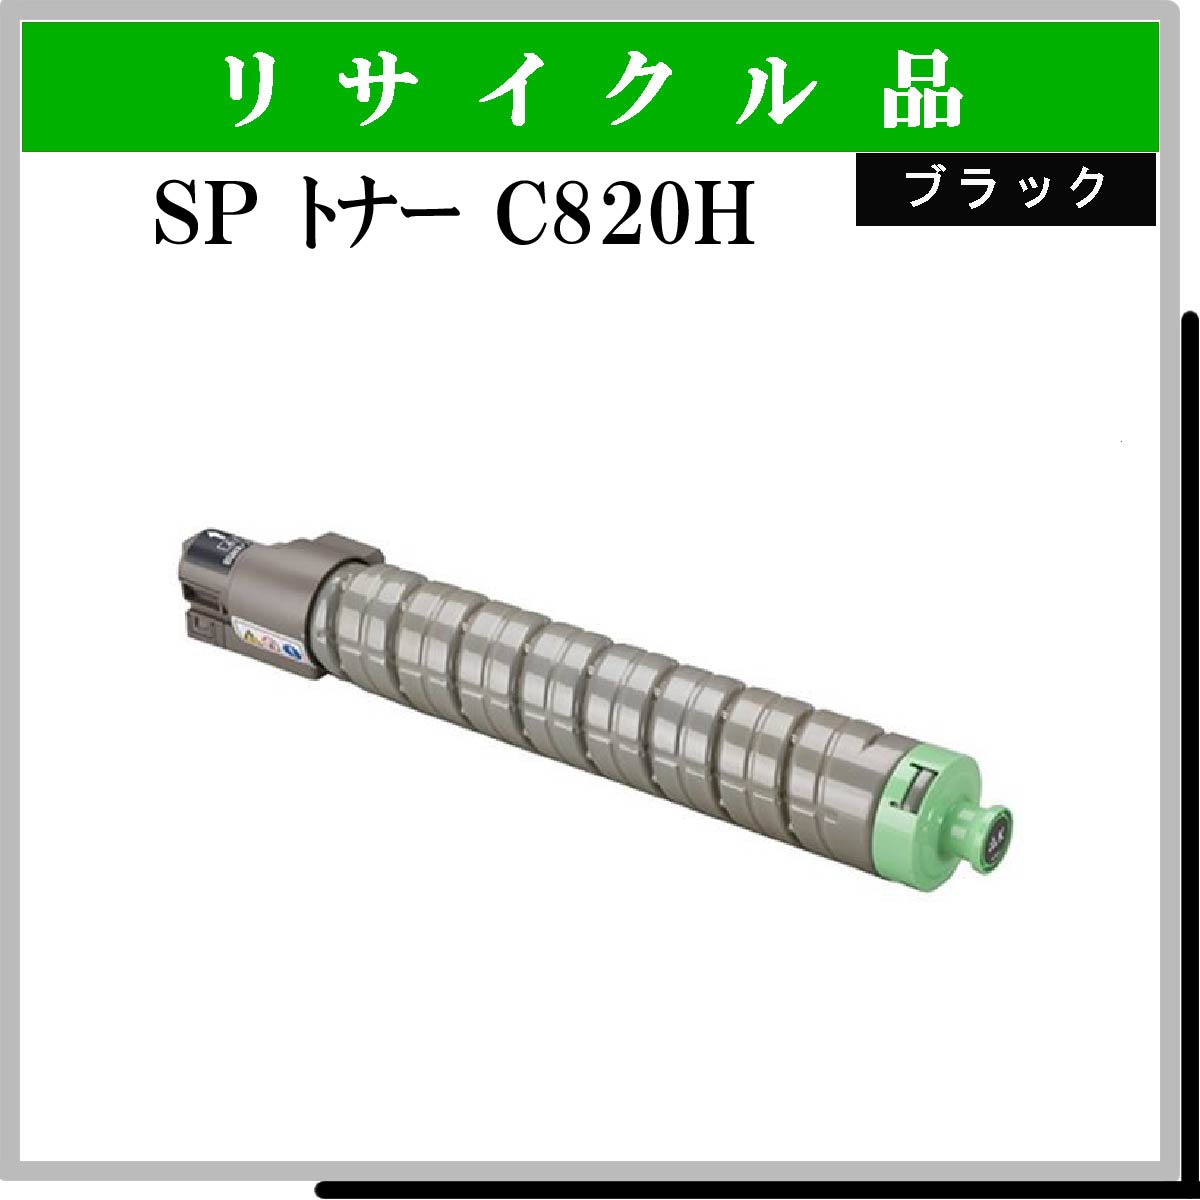 SP ﾄﾅｰ C820H ﾌﾞﾗｯｸ